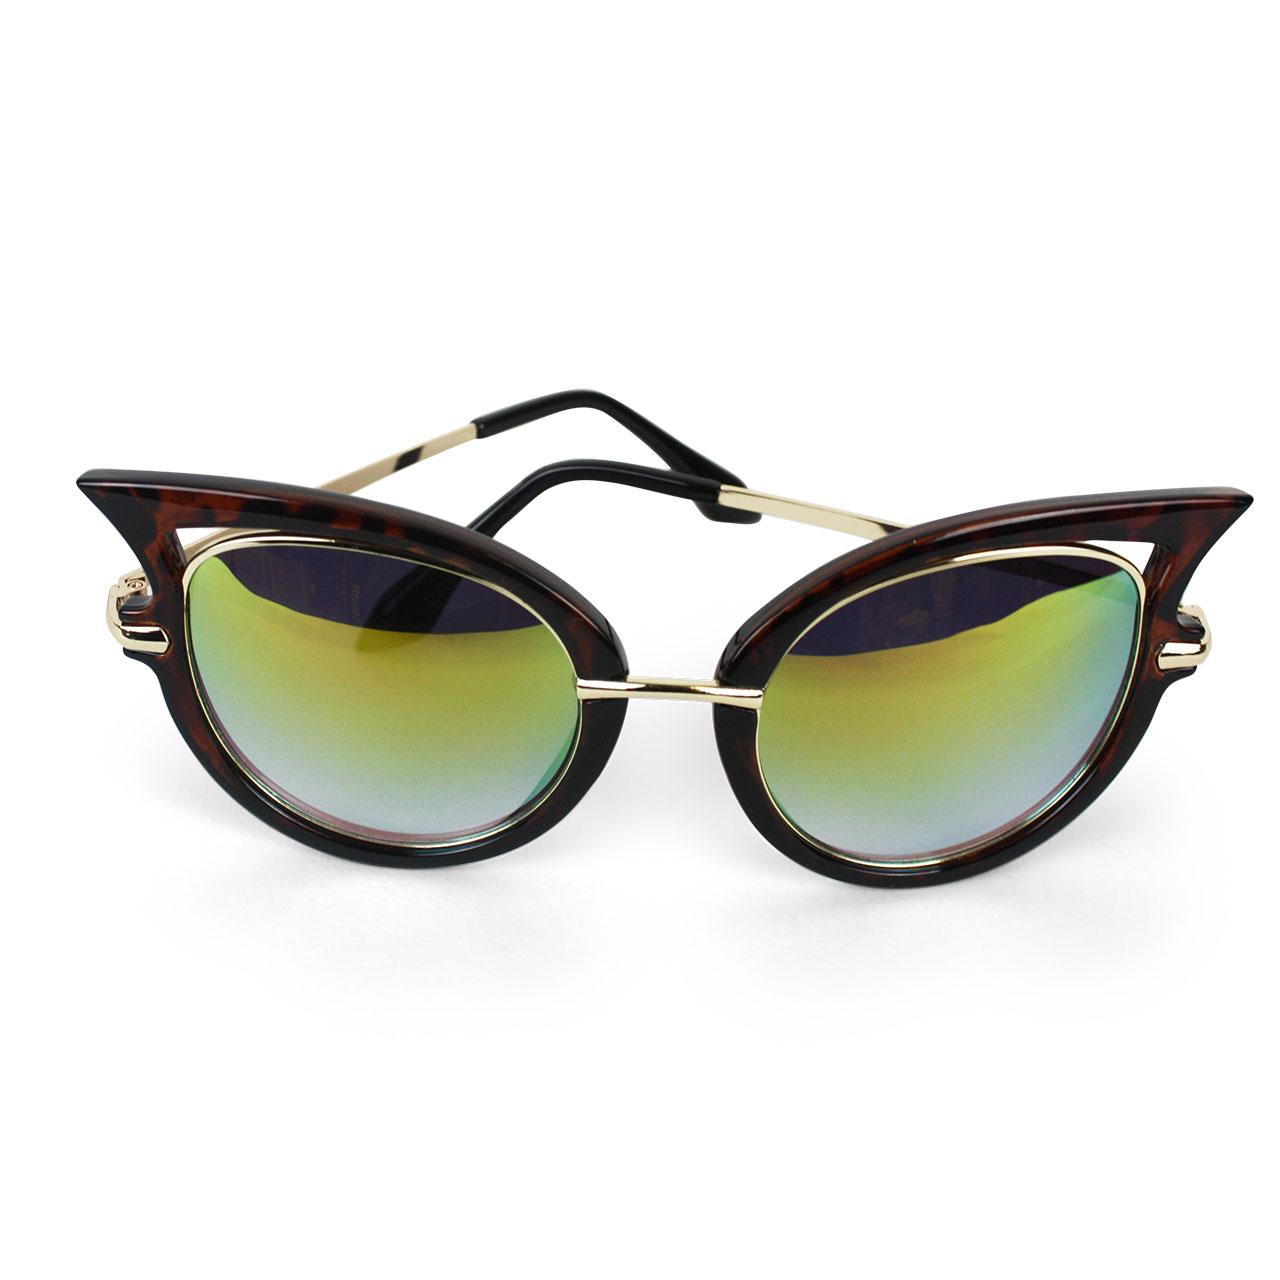 Women's Polarized Aviator Cat-Eye Designer Sunglasses With Frame